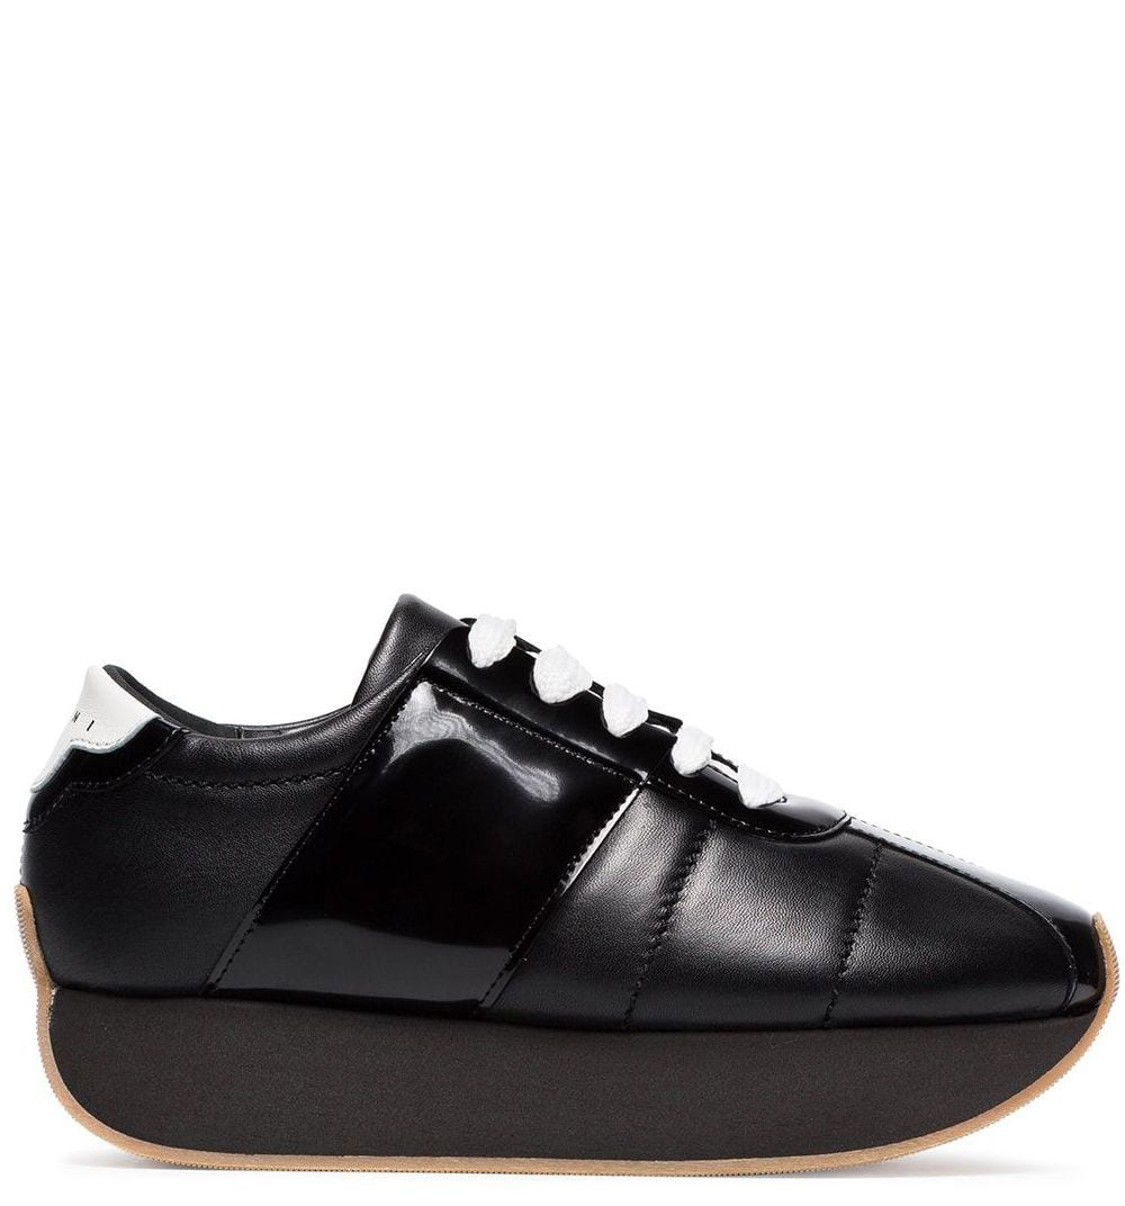 shop Marni Saldi Scarpe: Sneakers Marni, modello big foot, in pelle nera, suola in gomma nera, stringhe a contrasto bianche.

Composizione: 100% pelle.
Suola: 100% gomma.
 number 1620